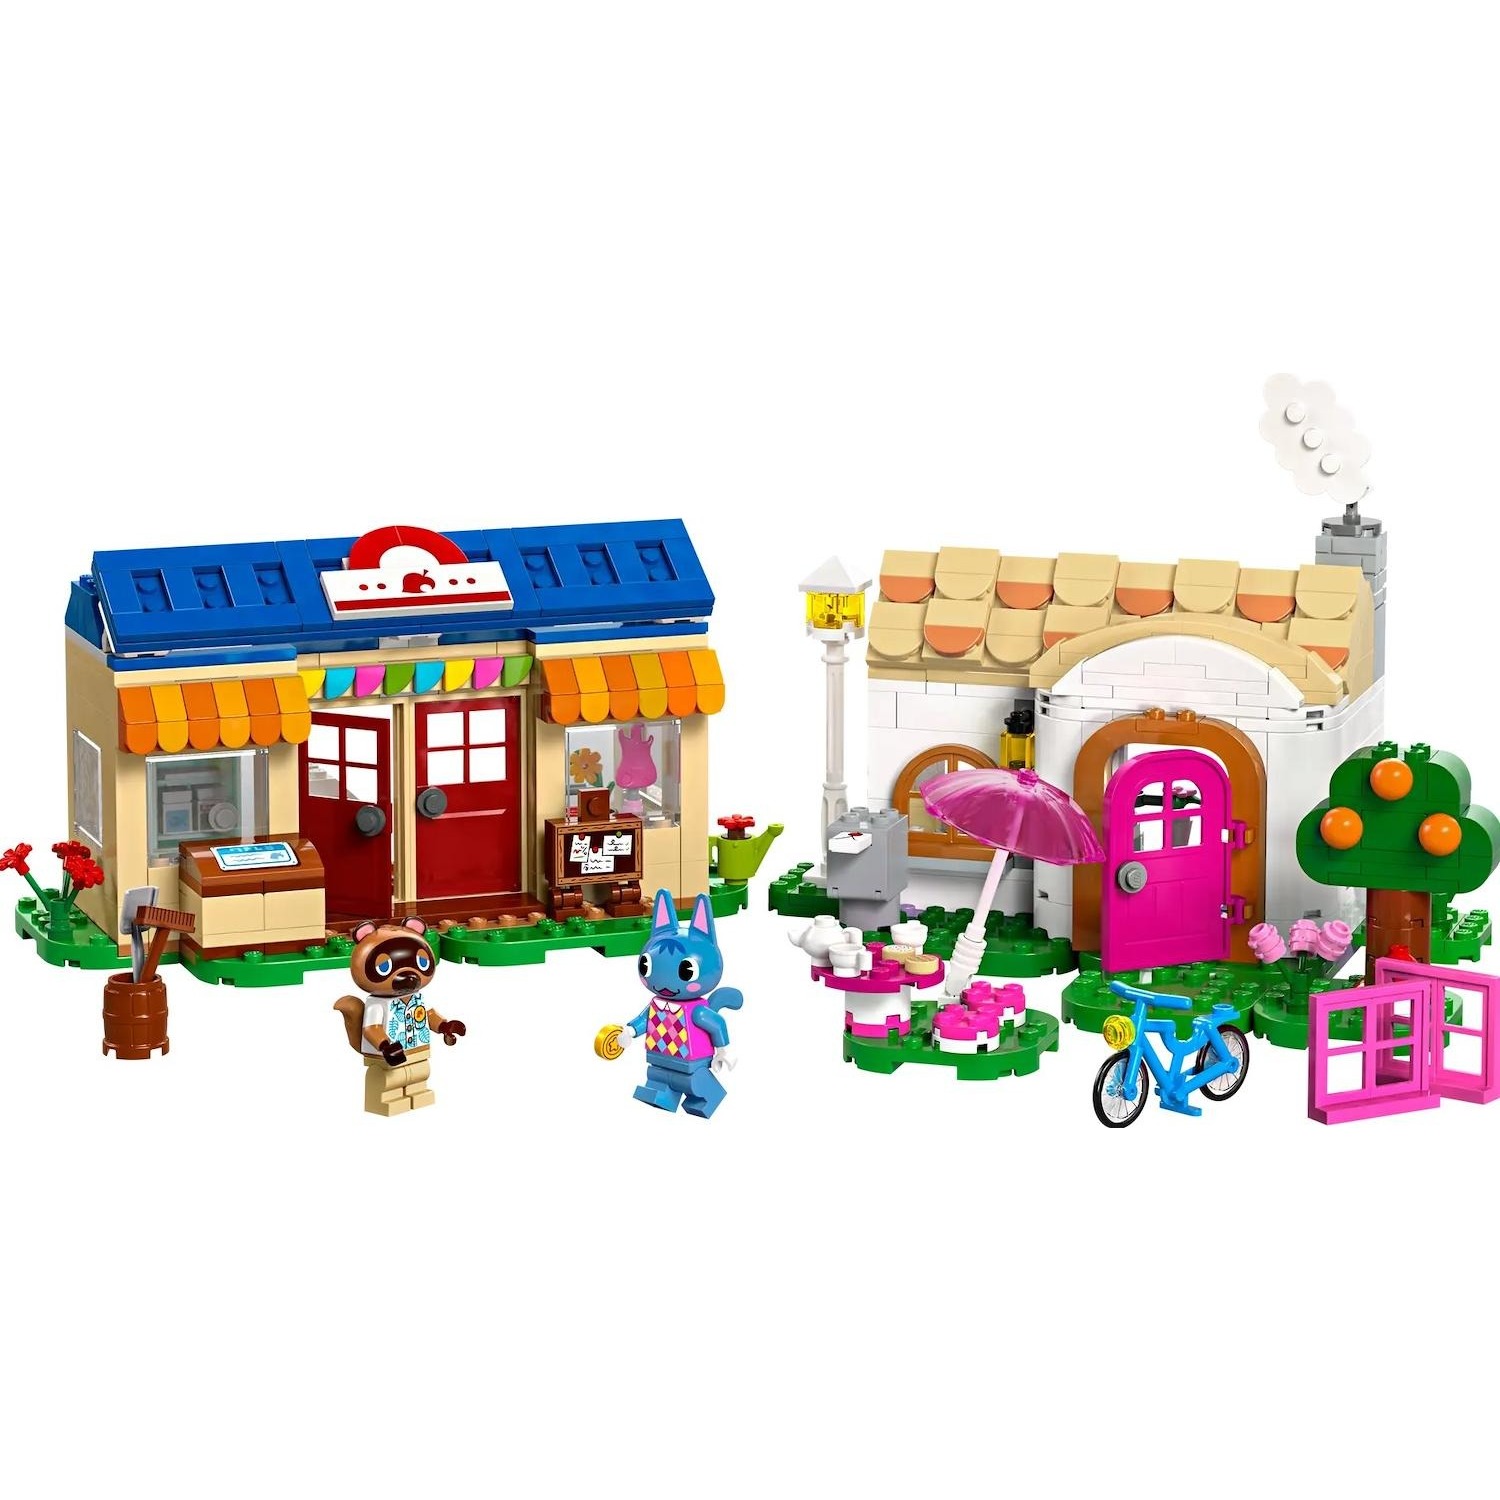 Immagine per Lego Animal Crossing Bottega di Nook e casa di Grinfia da DIMOStore